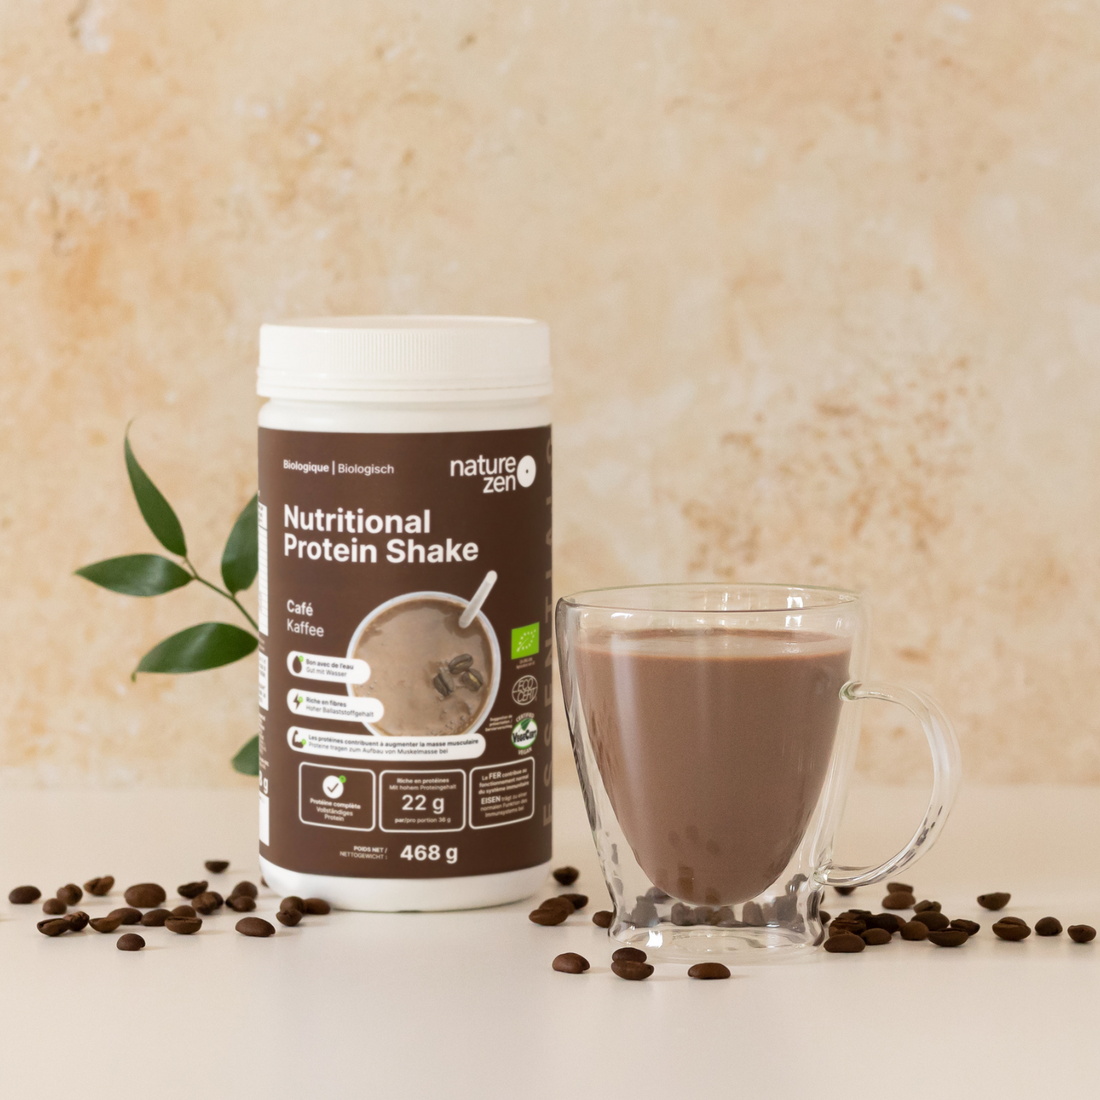 Boisson nutritionnelle protéinée en poudre biologique &amp; vegan | Nature Zen Essentials - Café